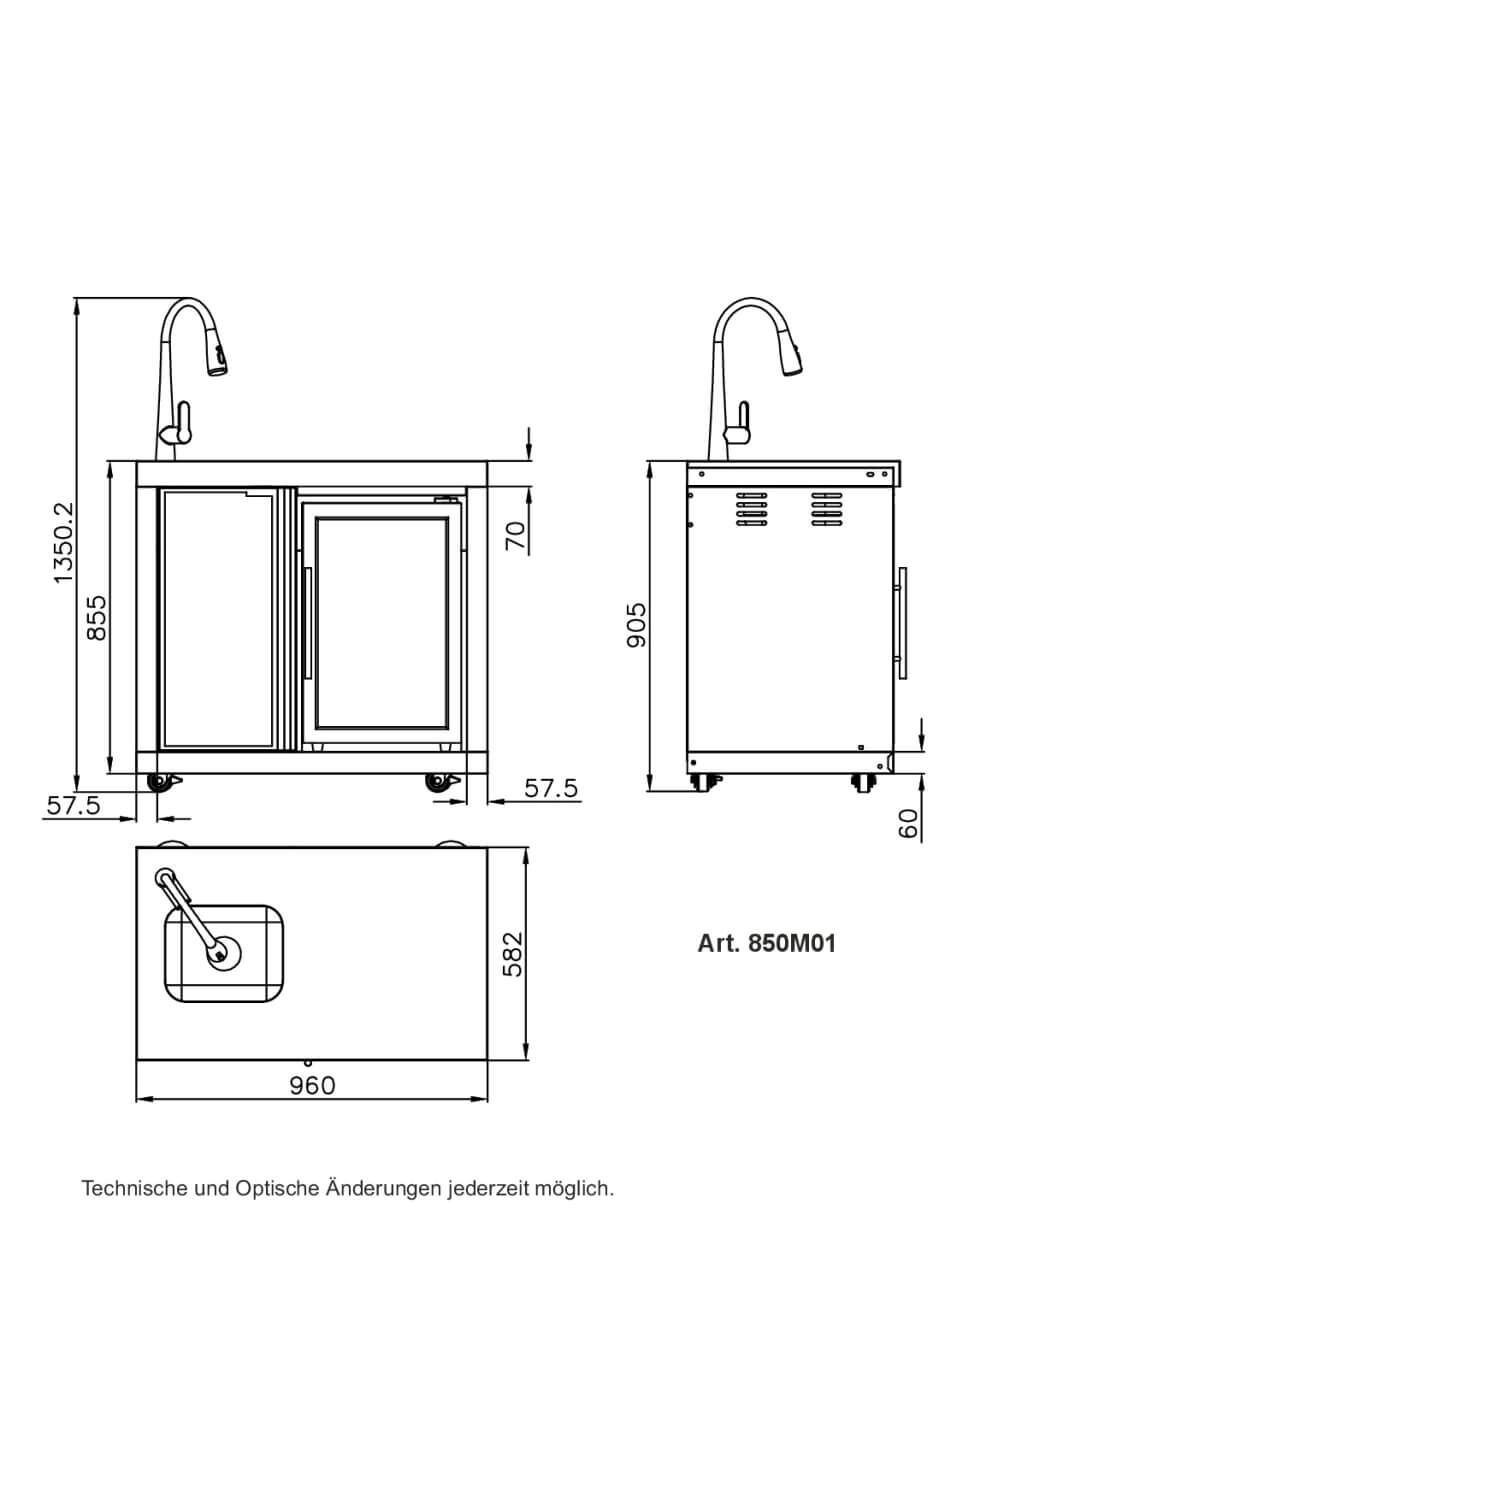 ALL'GRILL Modul 1 - Waschbecken & Kühlschrank Einbaumodul 850M01